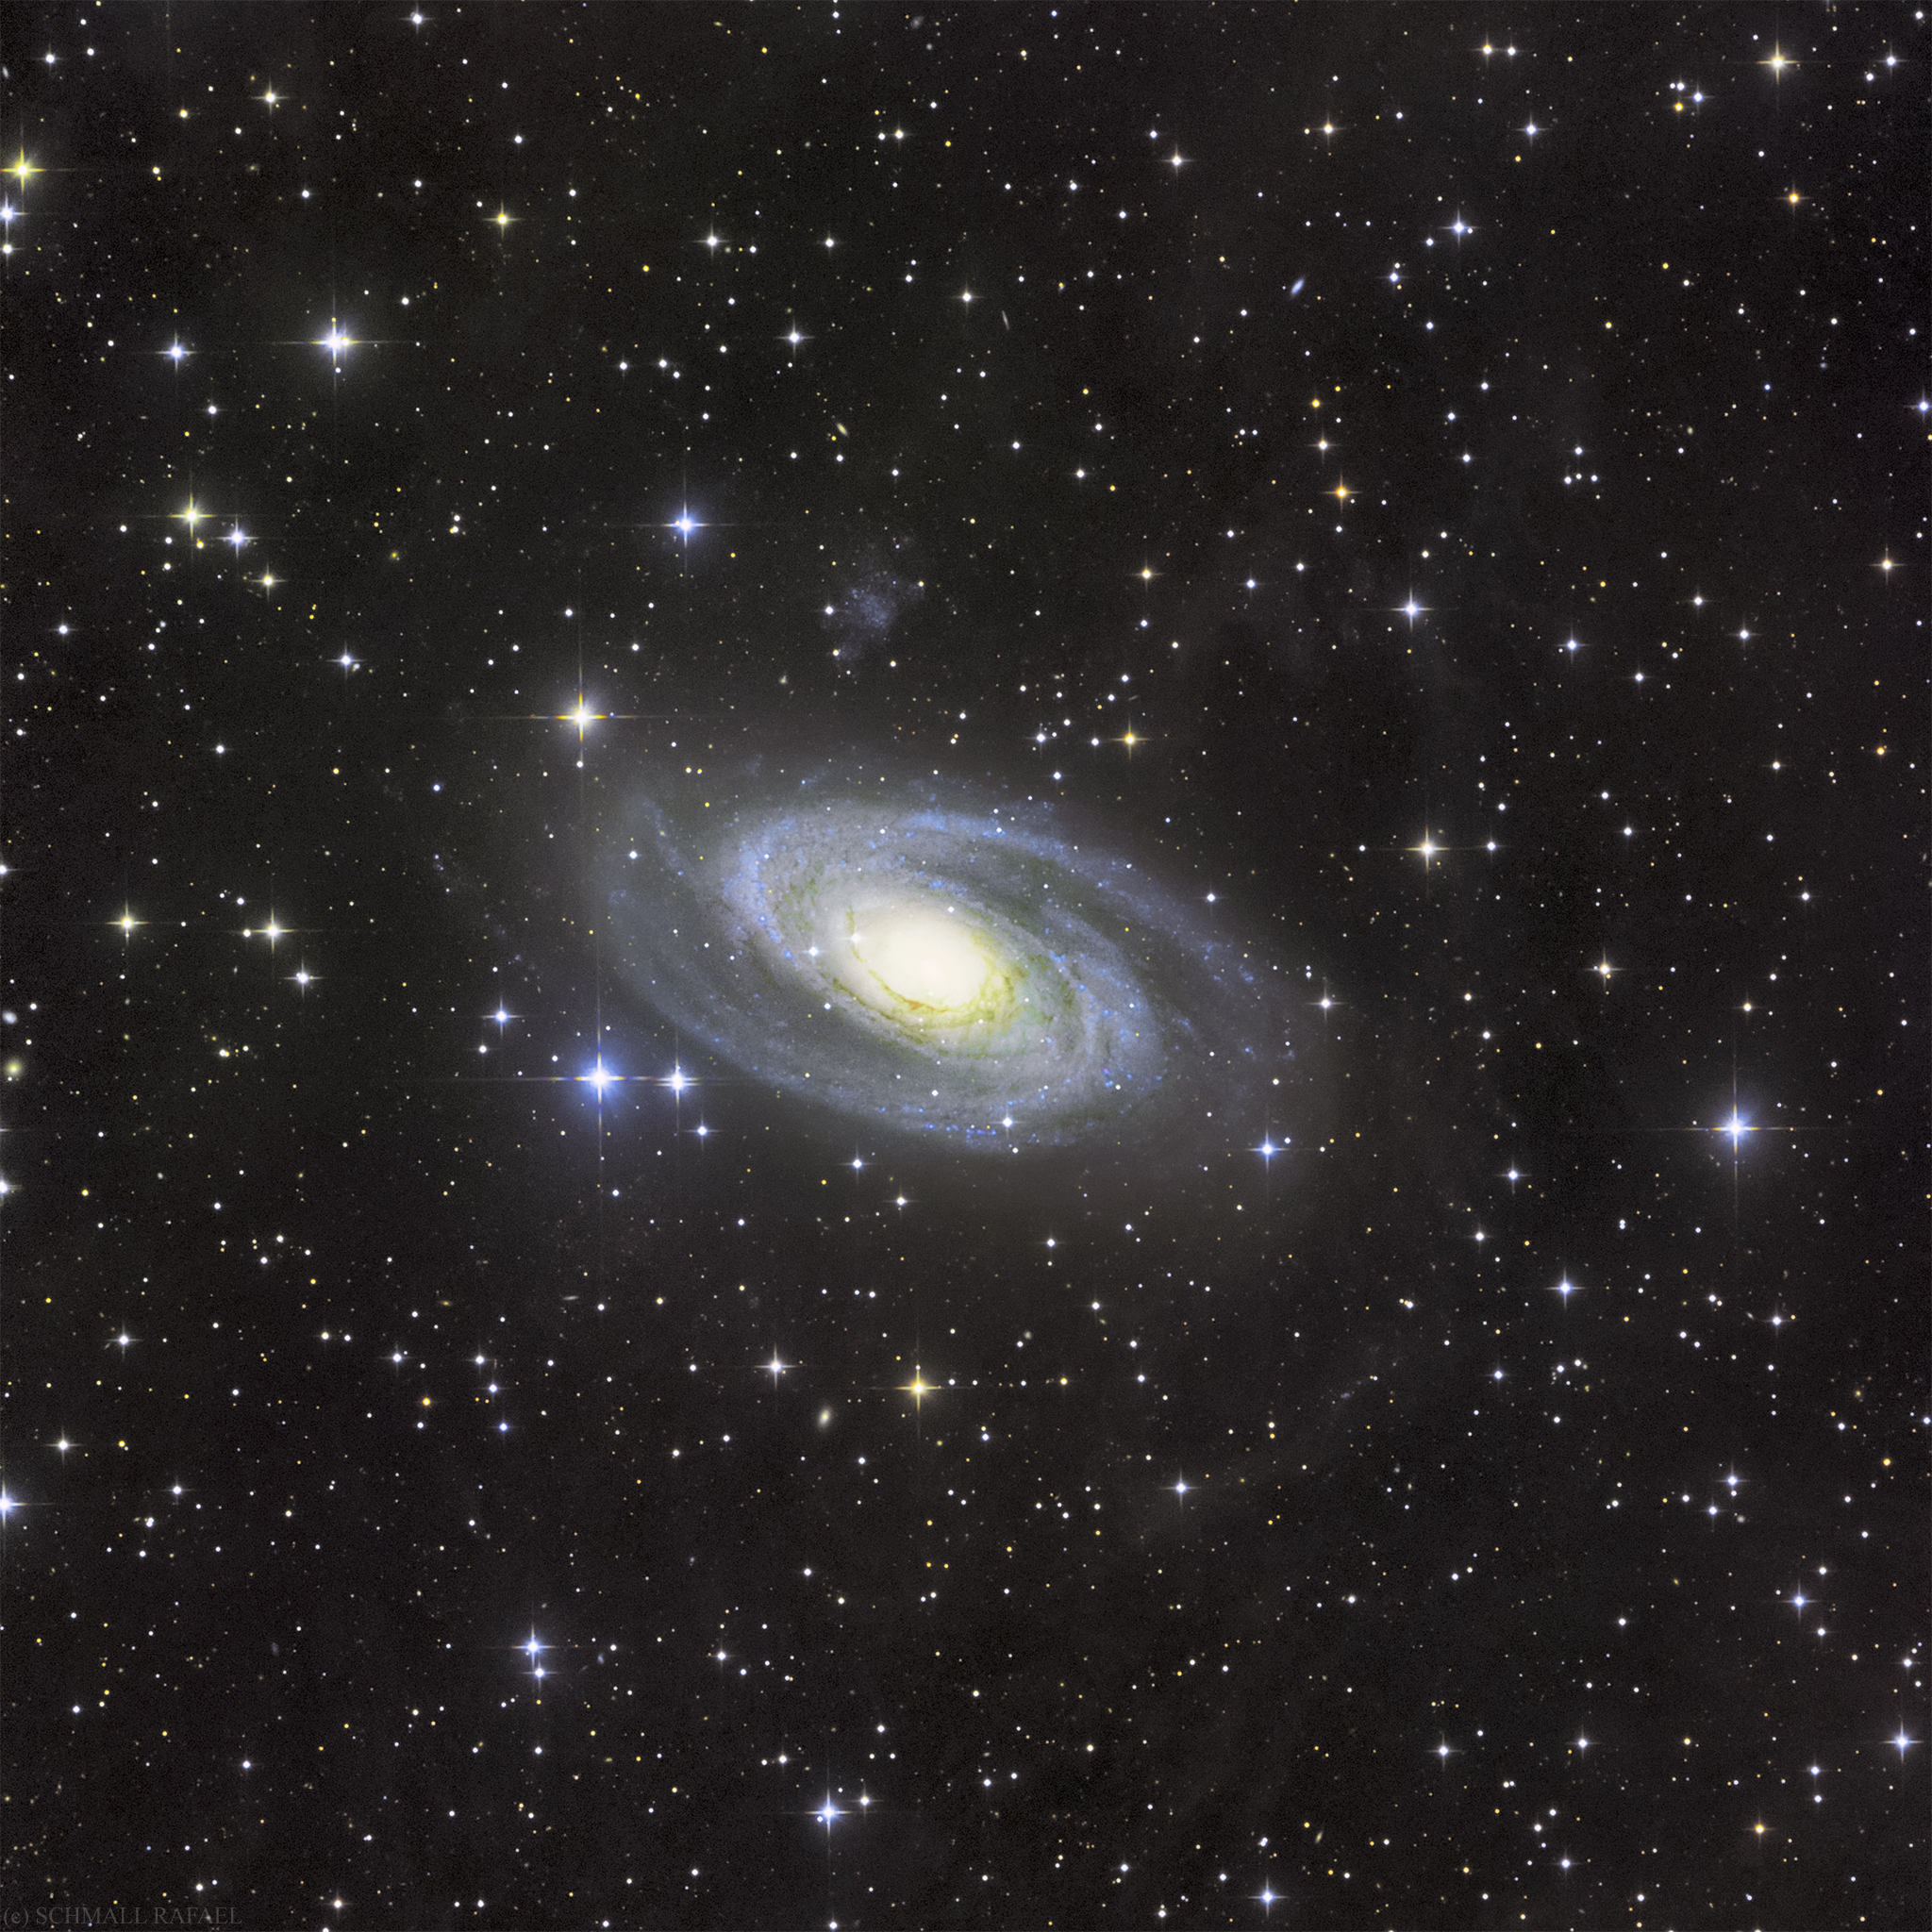 Messier 81 - Bode galaxisa